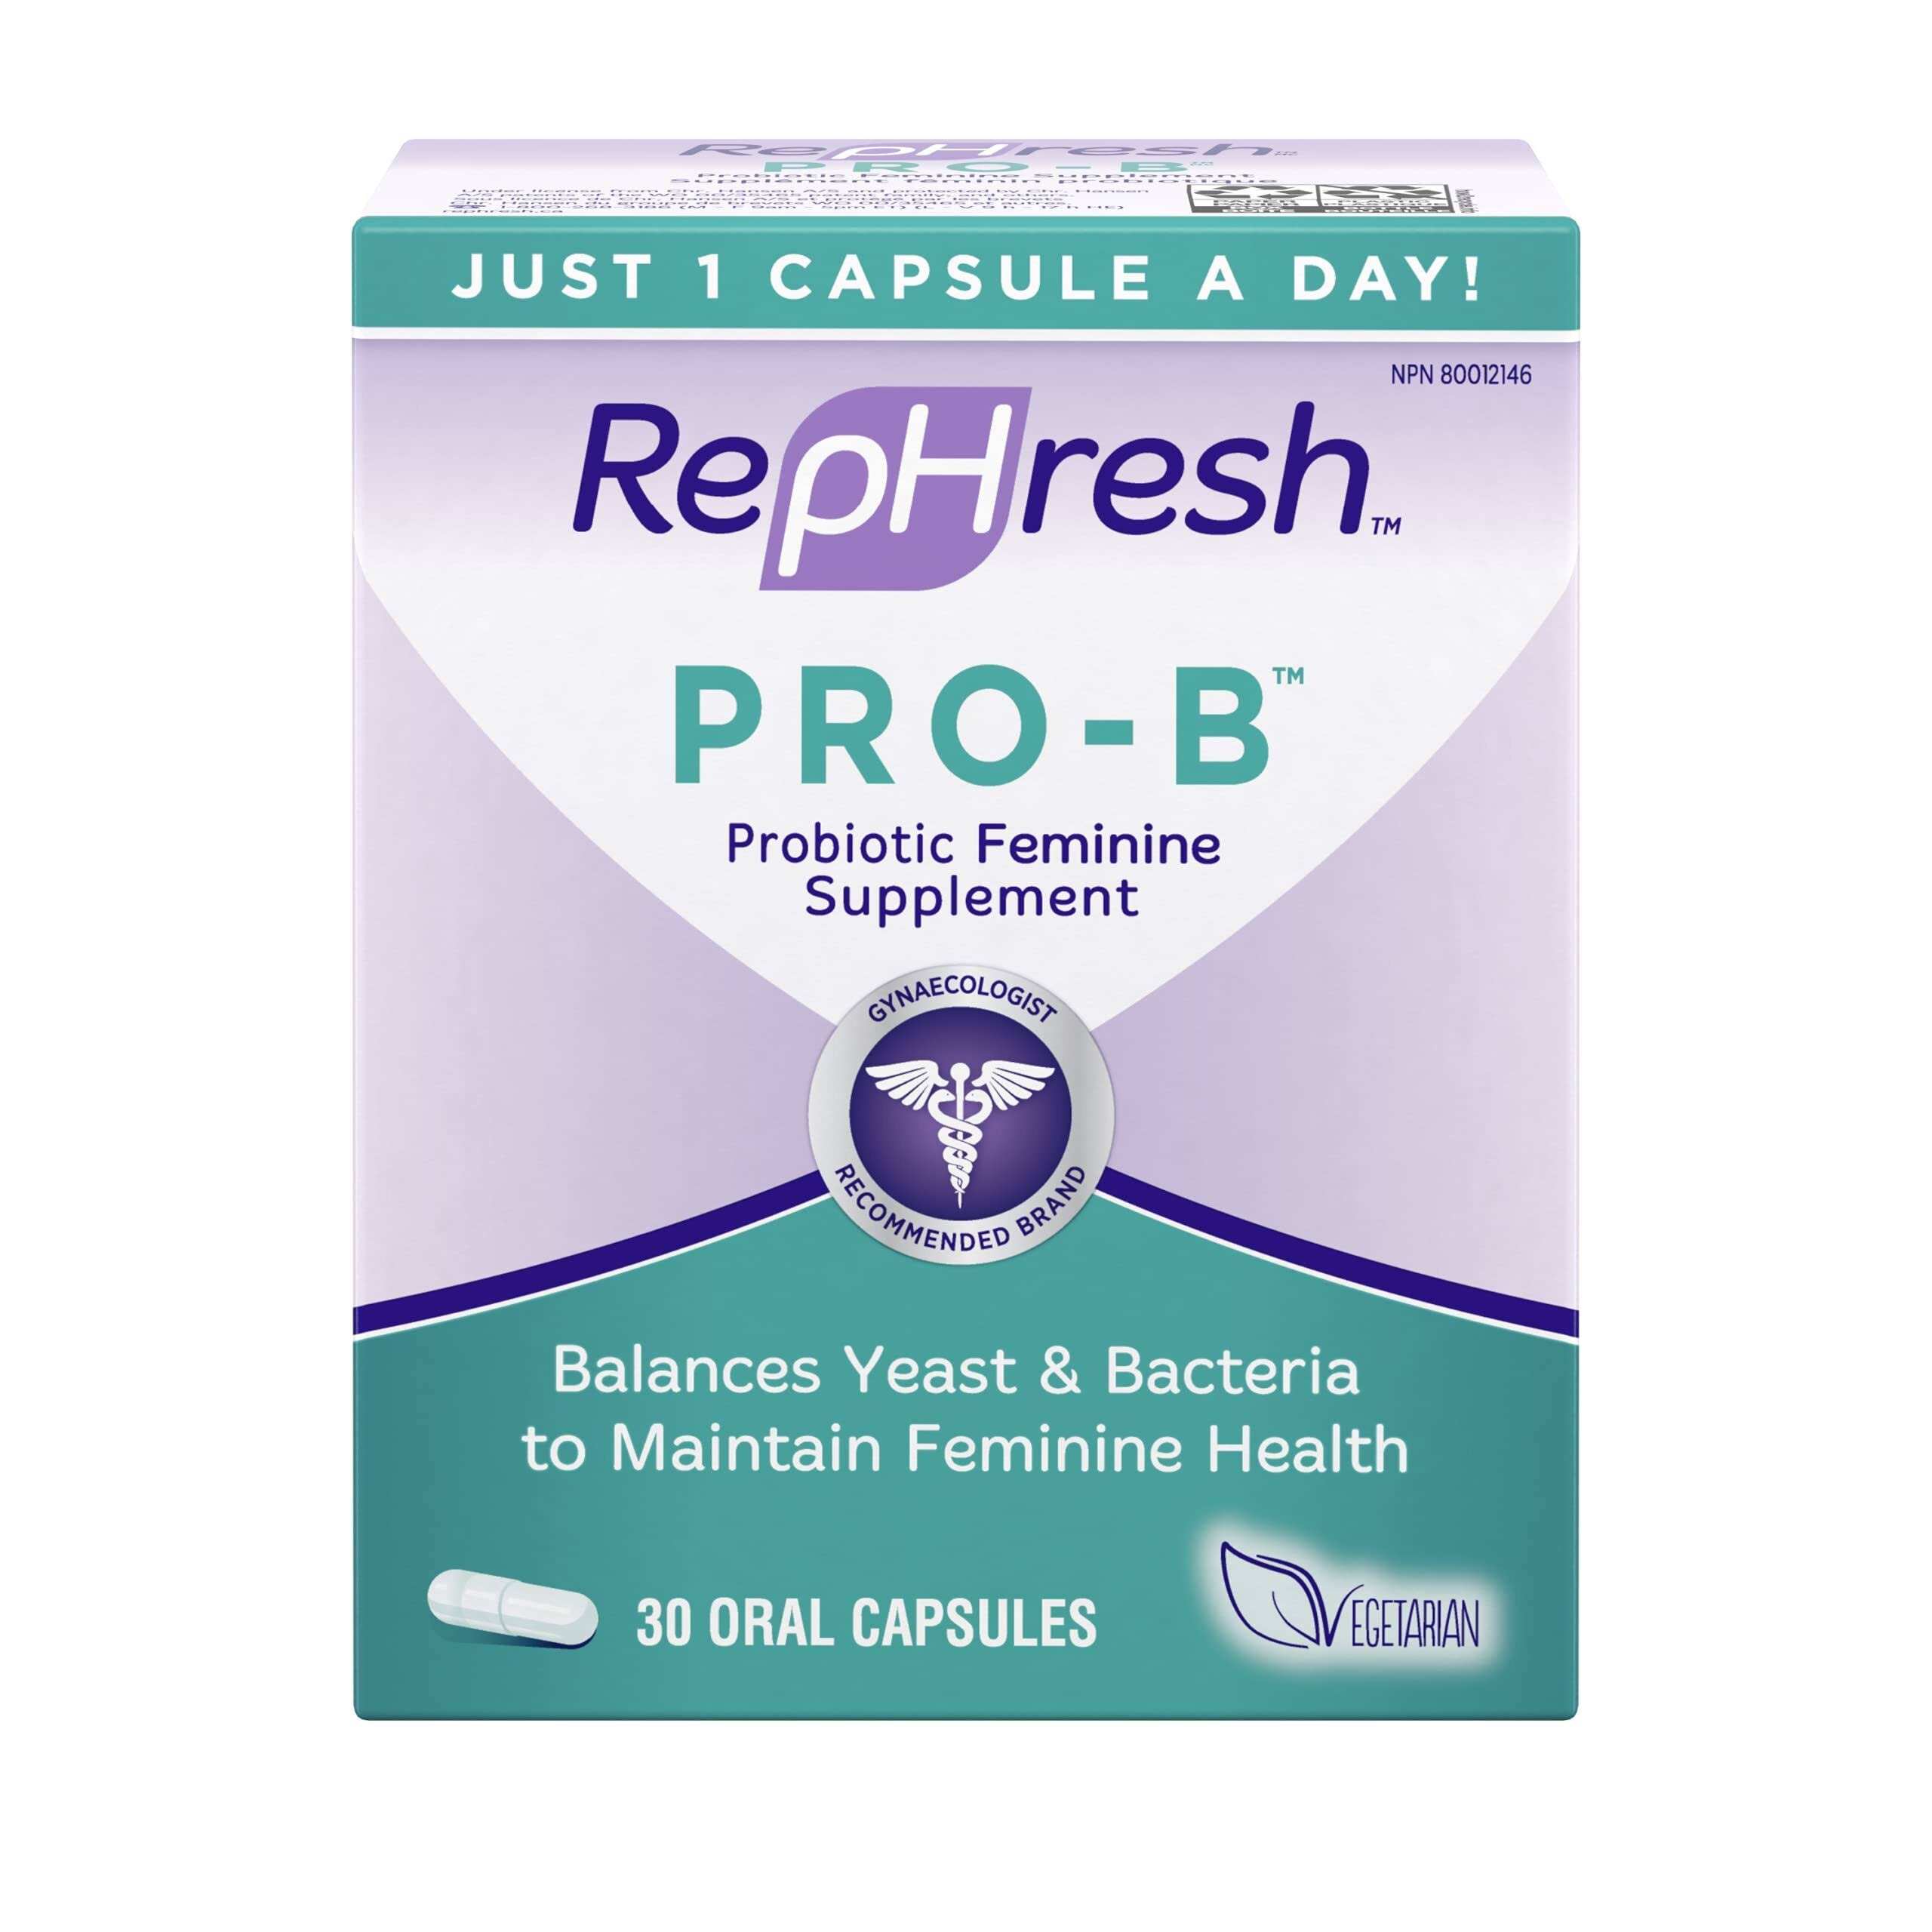 RepHresh Pro-B Probiotic Feminine Supplement - 30 Capsules